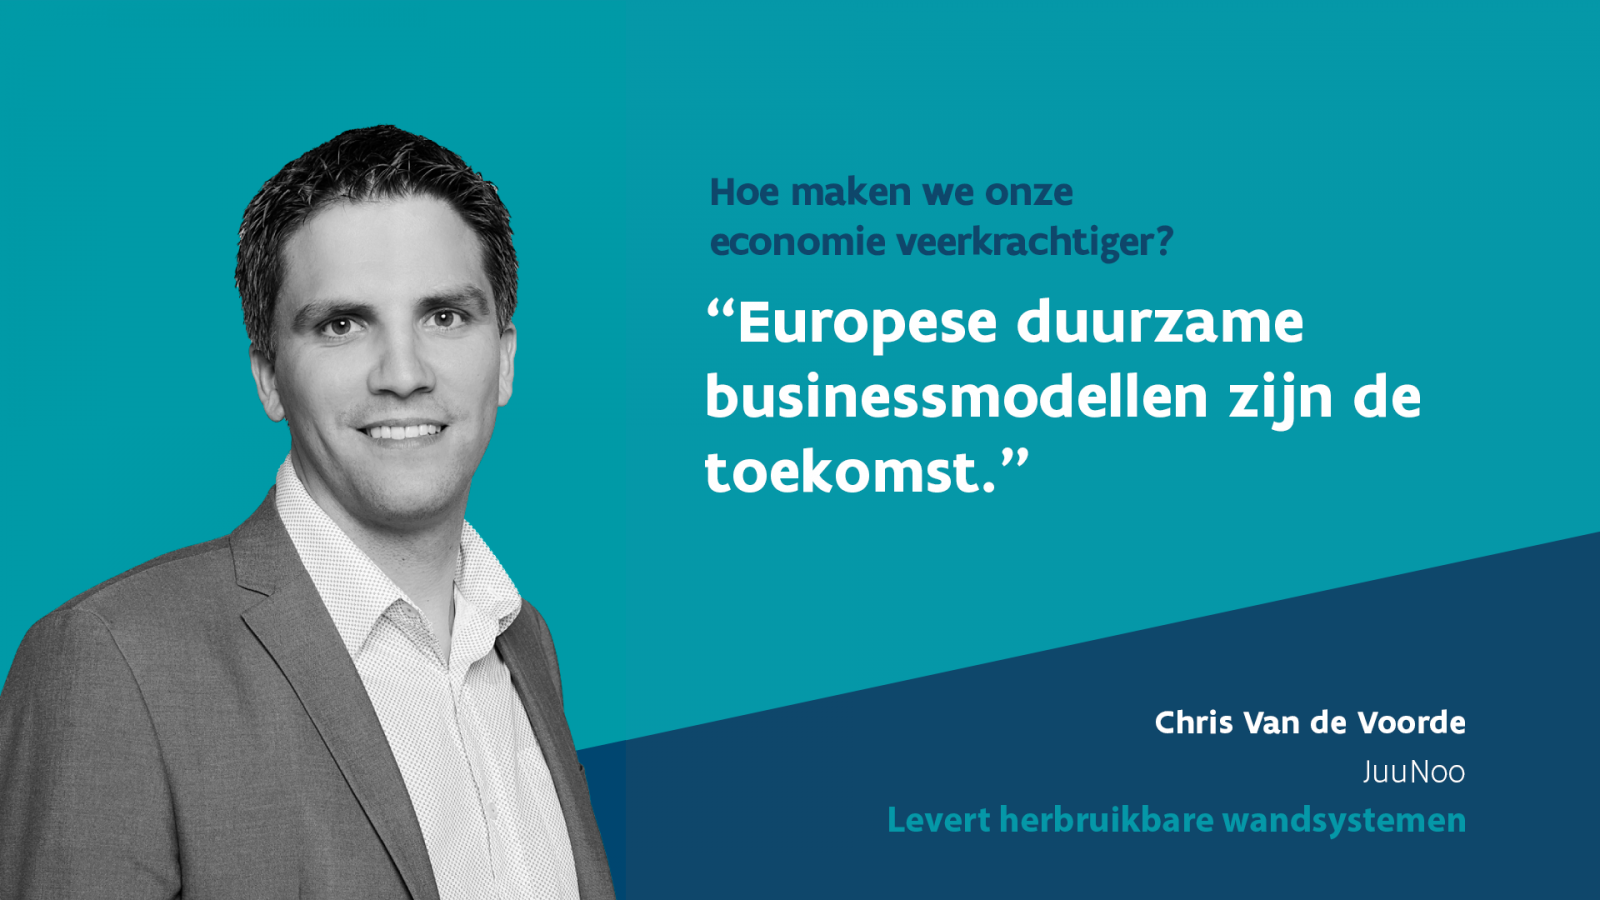 Chris Van de Voorde